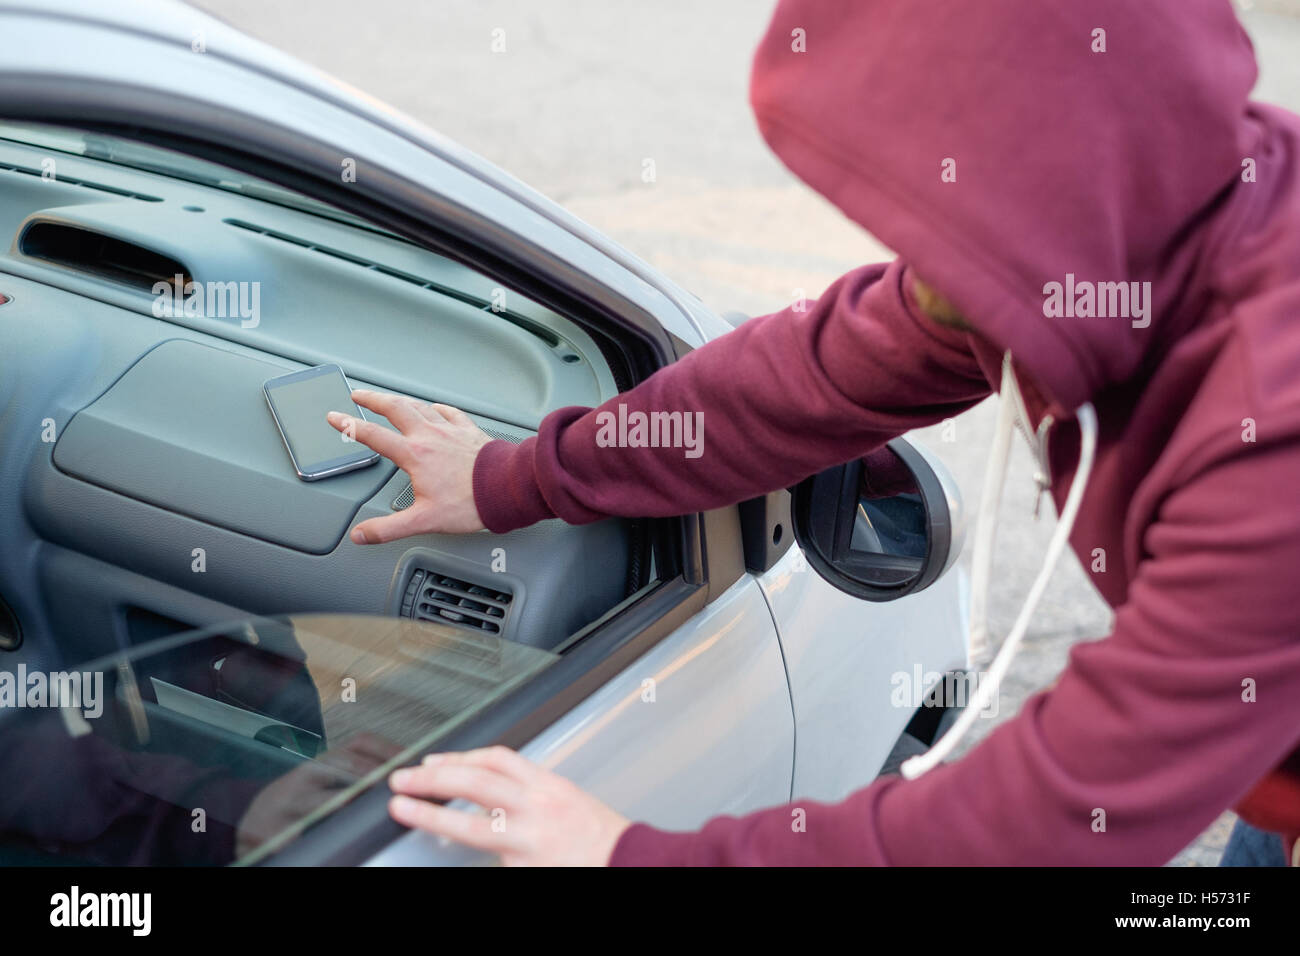 Encapuchado ladrón robar un teléfono móvil desde un automóvil estacionado Foto de stock